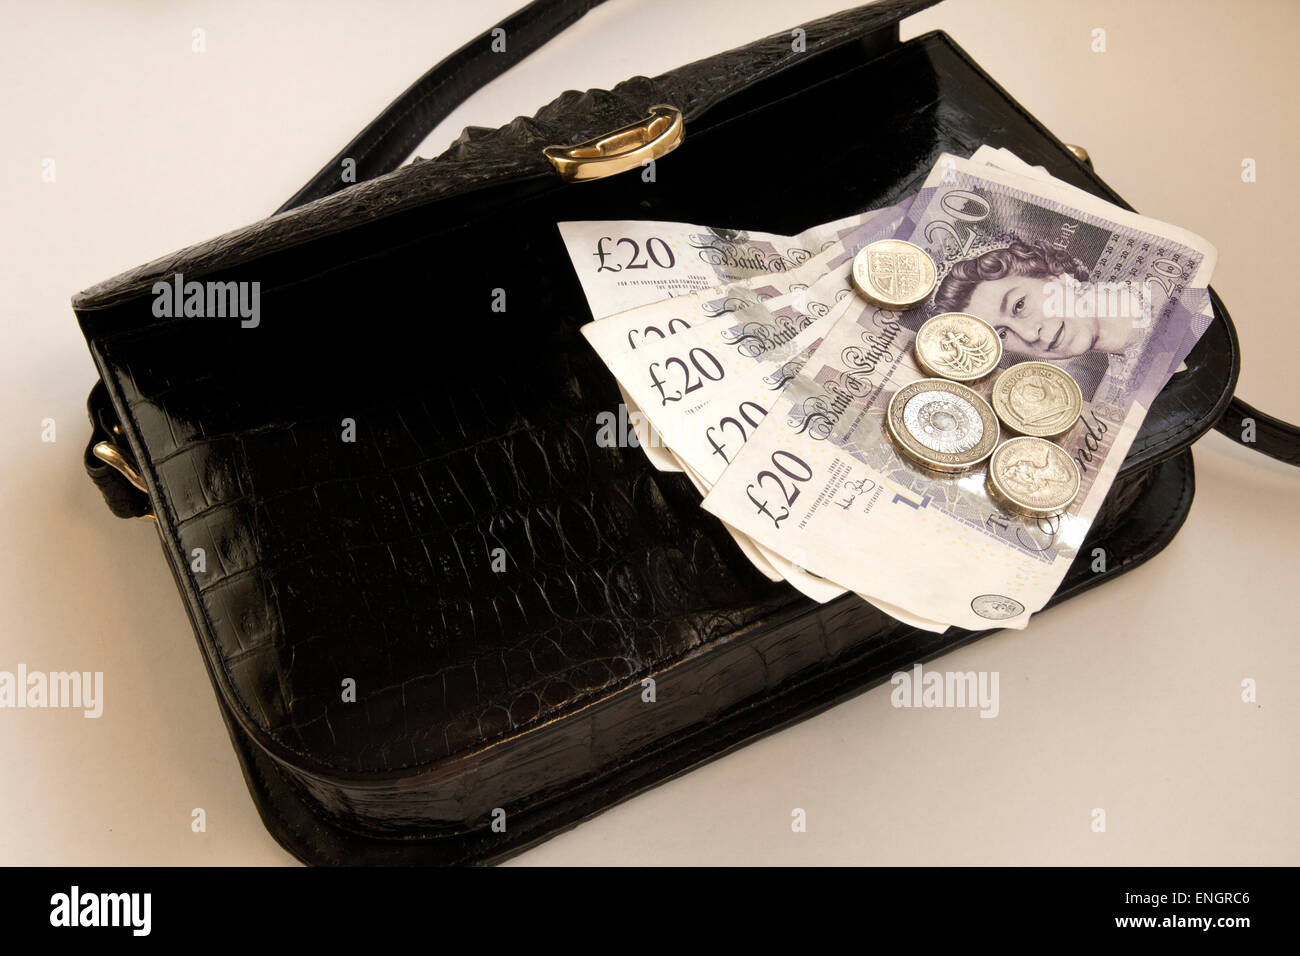 Libra británica observa£20 y 1 y 2 libras de monedas en Negro Bolso de piel de cocodrilo, broche dorado Foto de stock